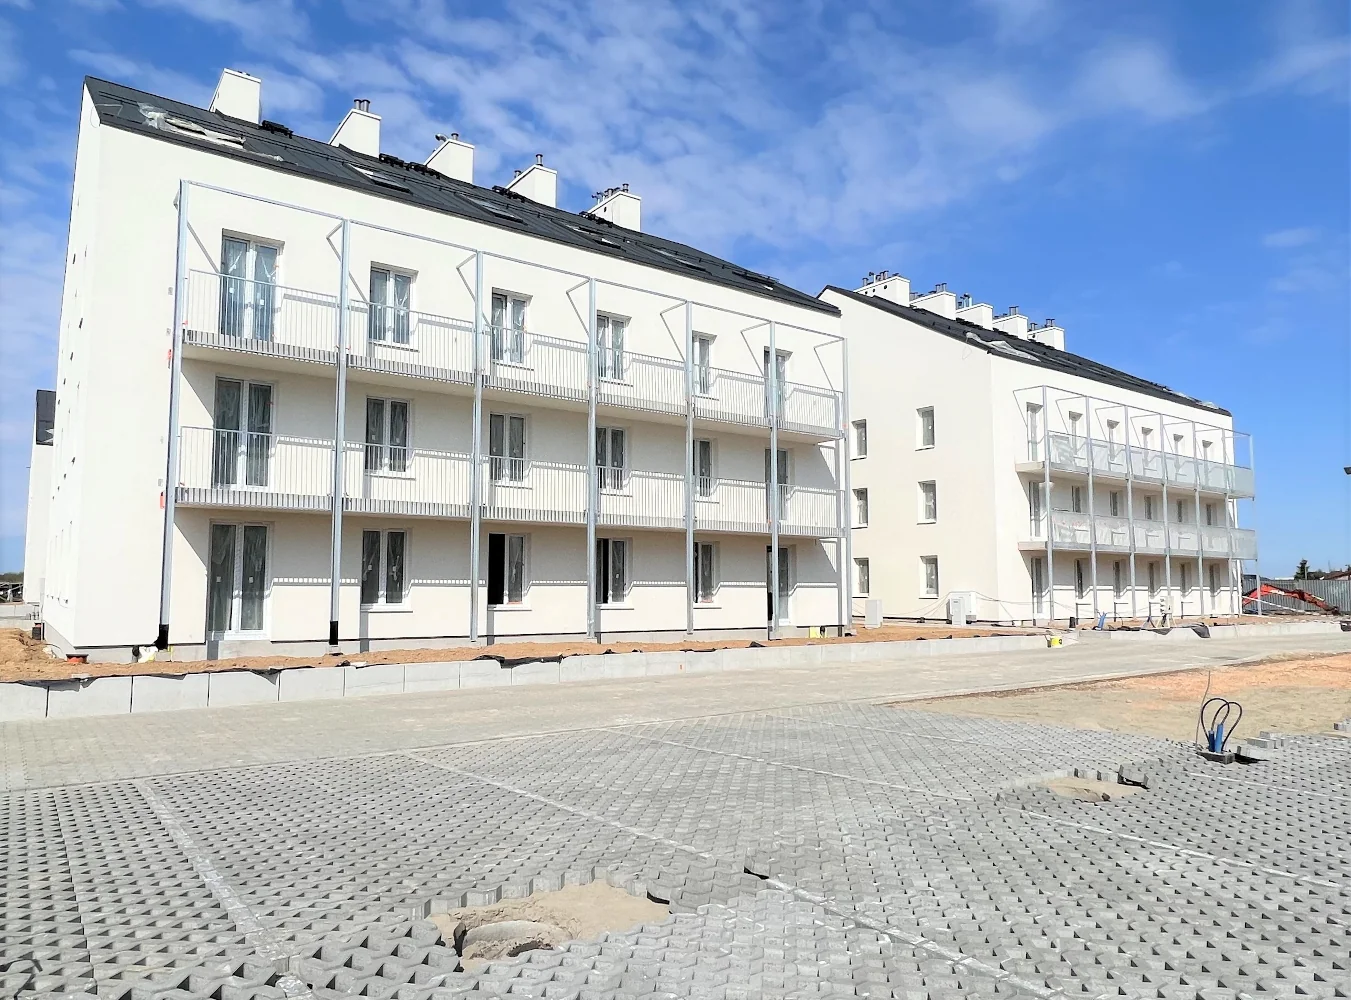 Trwa rekrutacja do 96 mieszkań przy ul. Parkowej w Zamościu